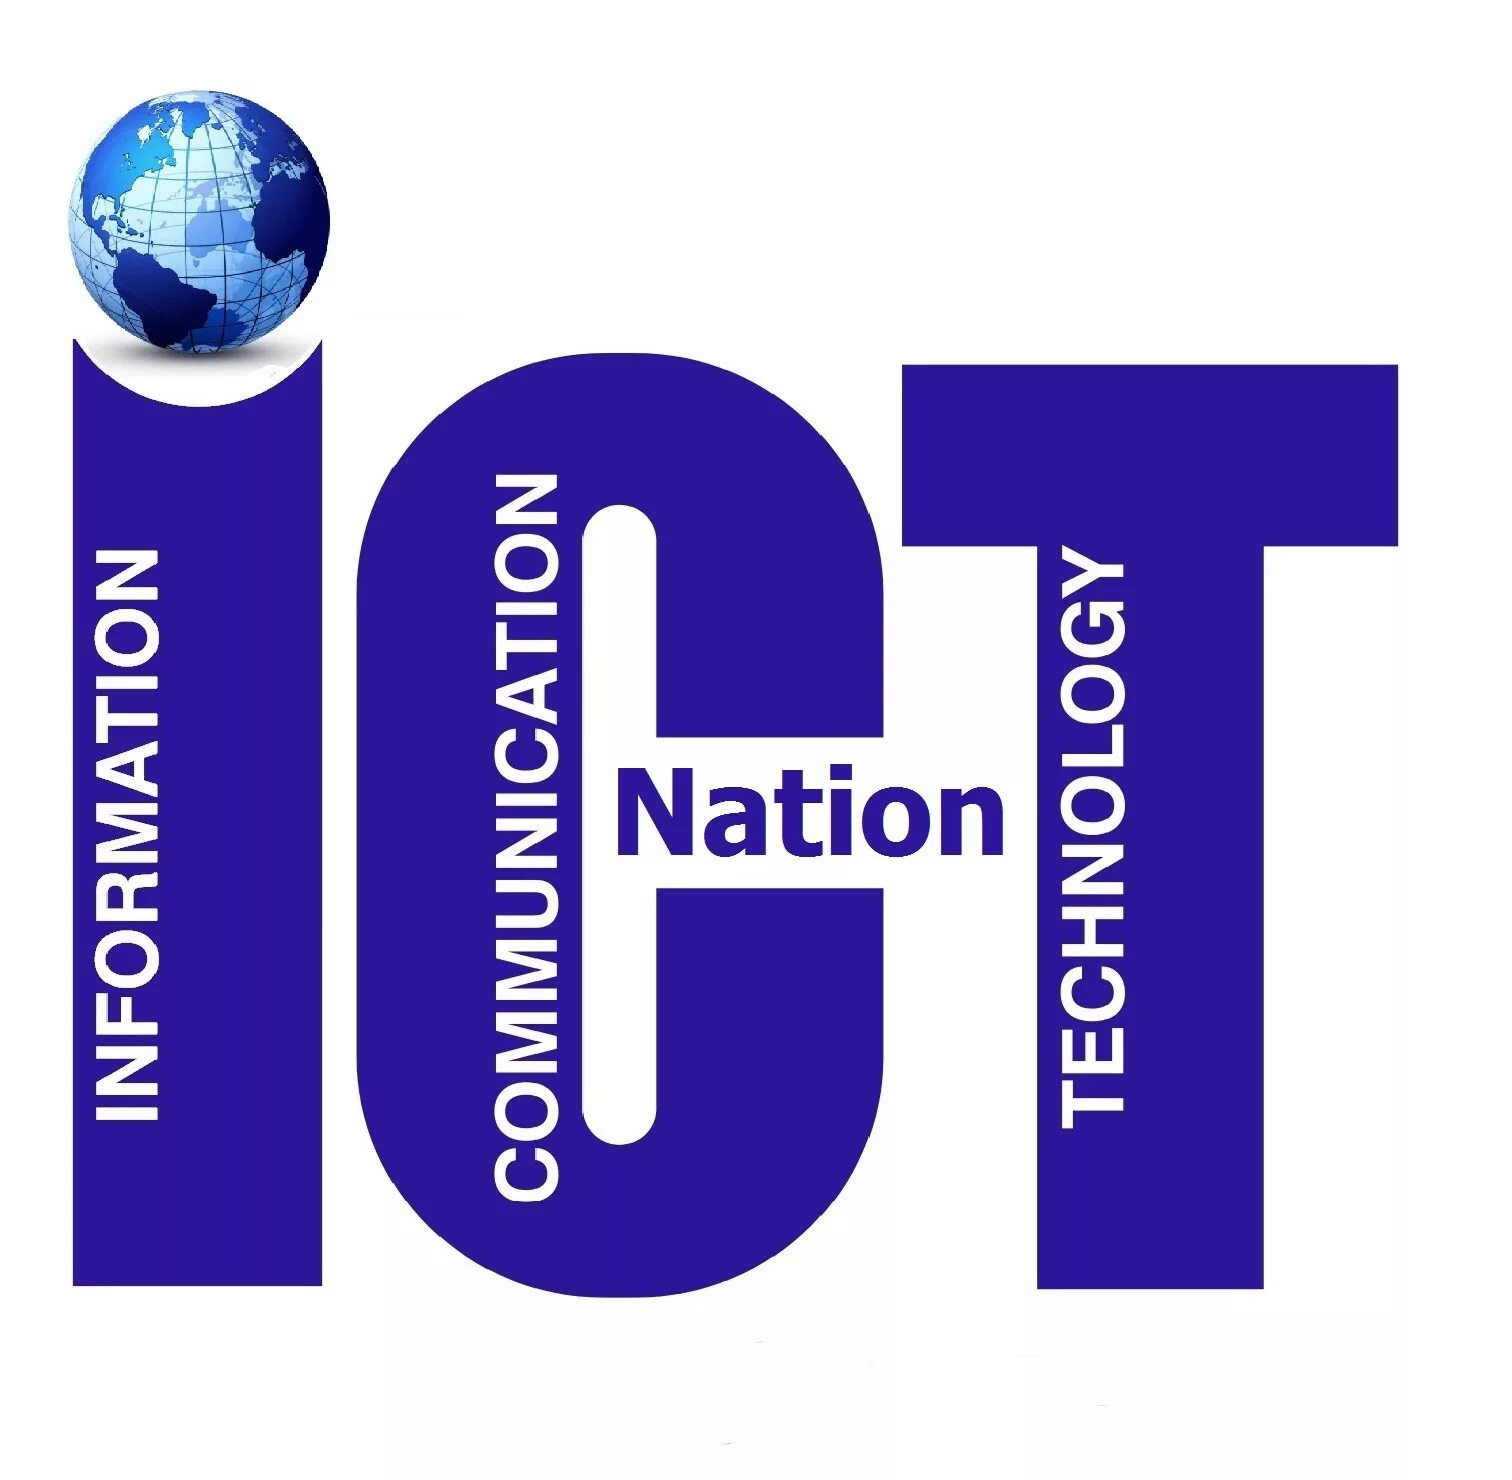 Информационные технологии. ICT. Логотип ICT. Information and communications Technology.